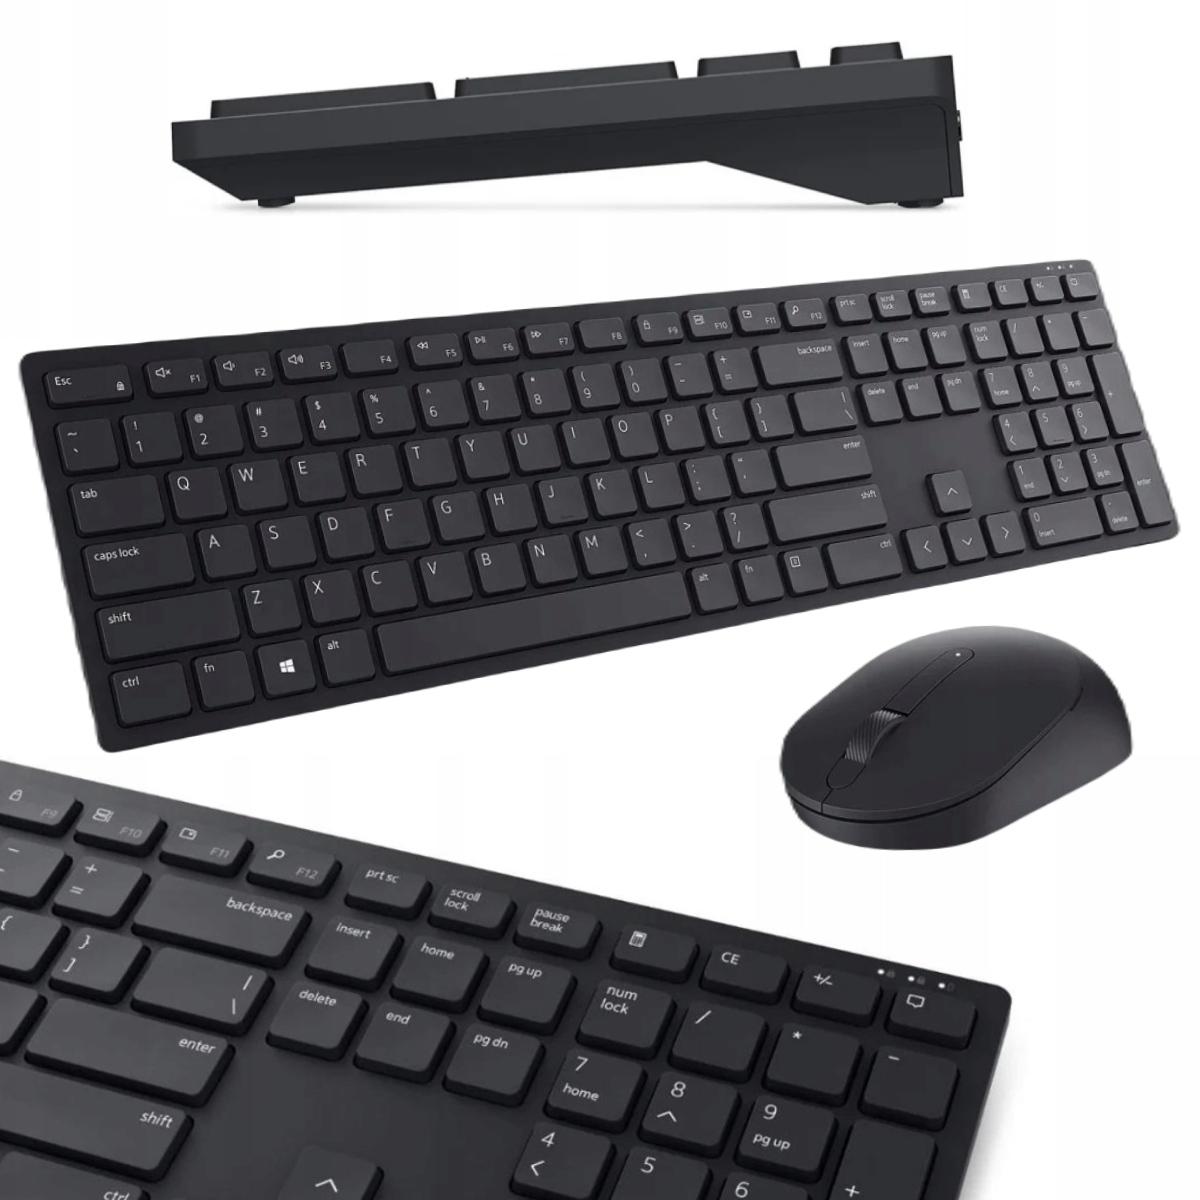 Zestaw Dell Pro: bezprzewodowa klawiatura i mysz KM5221W - najważniejsze cechy: